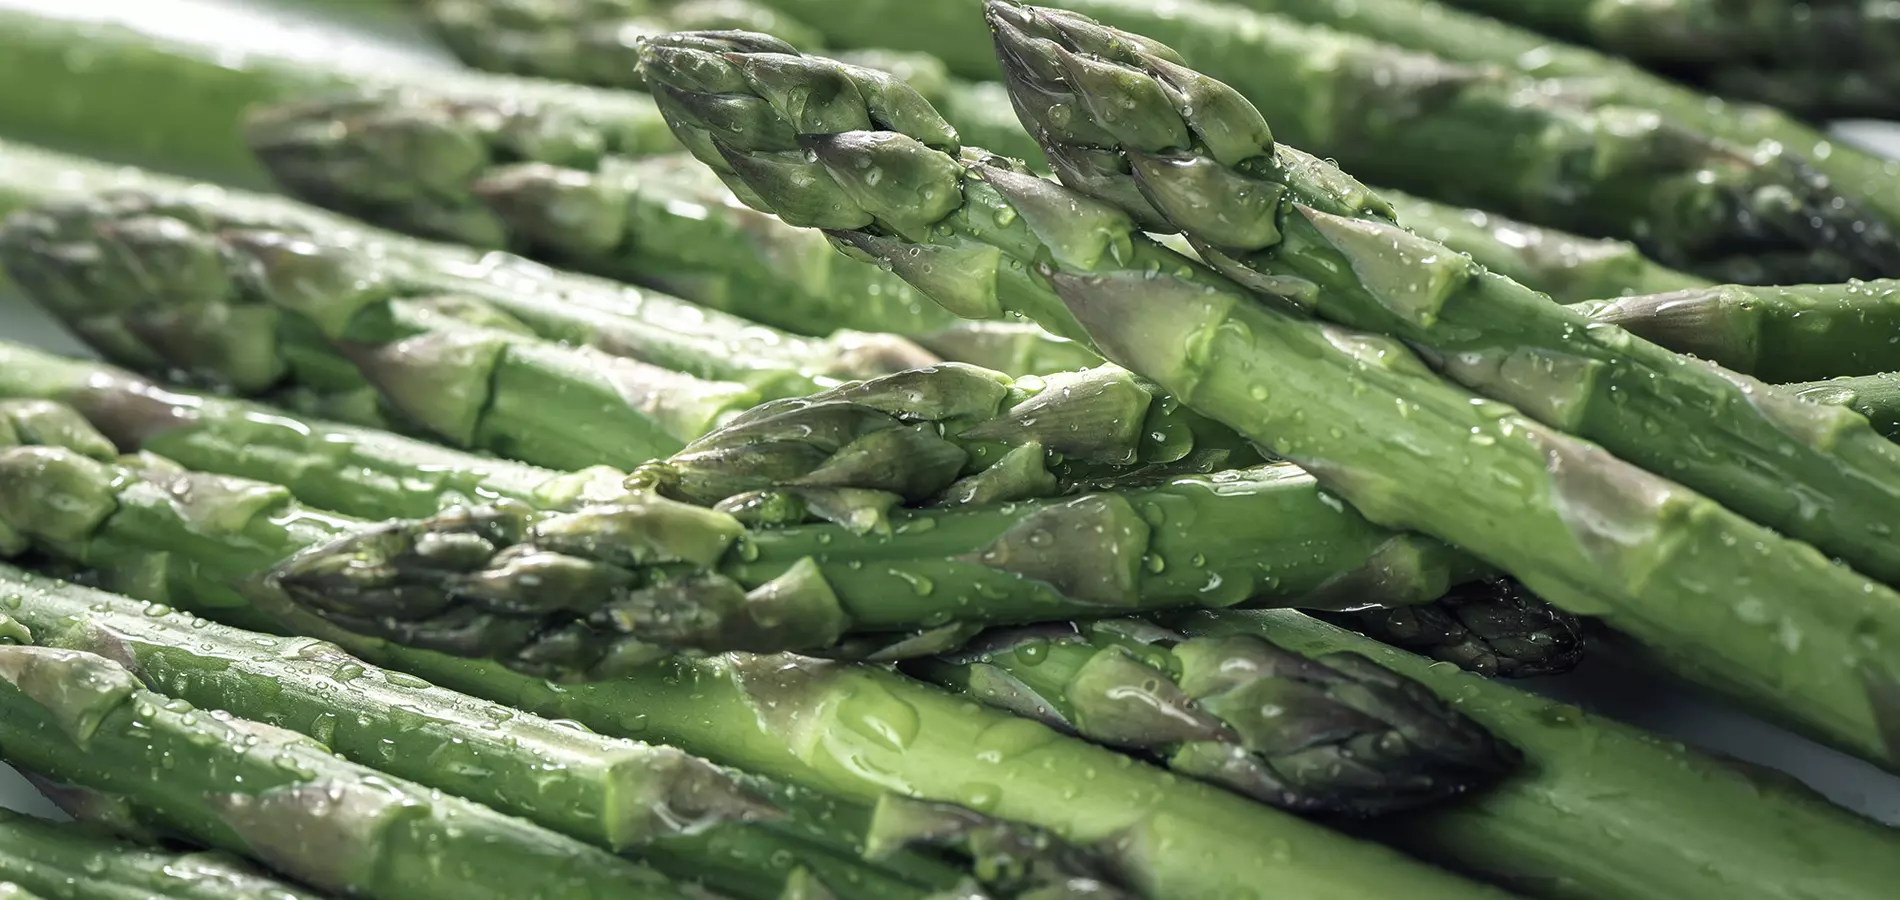 Asparagus close up